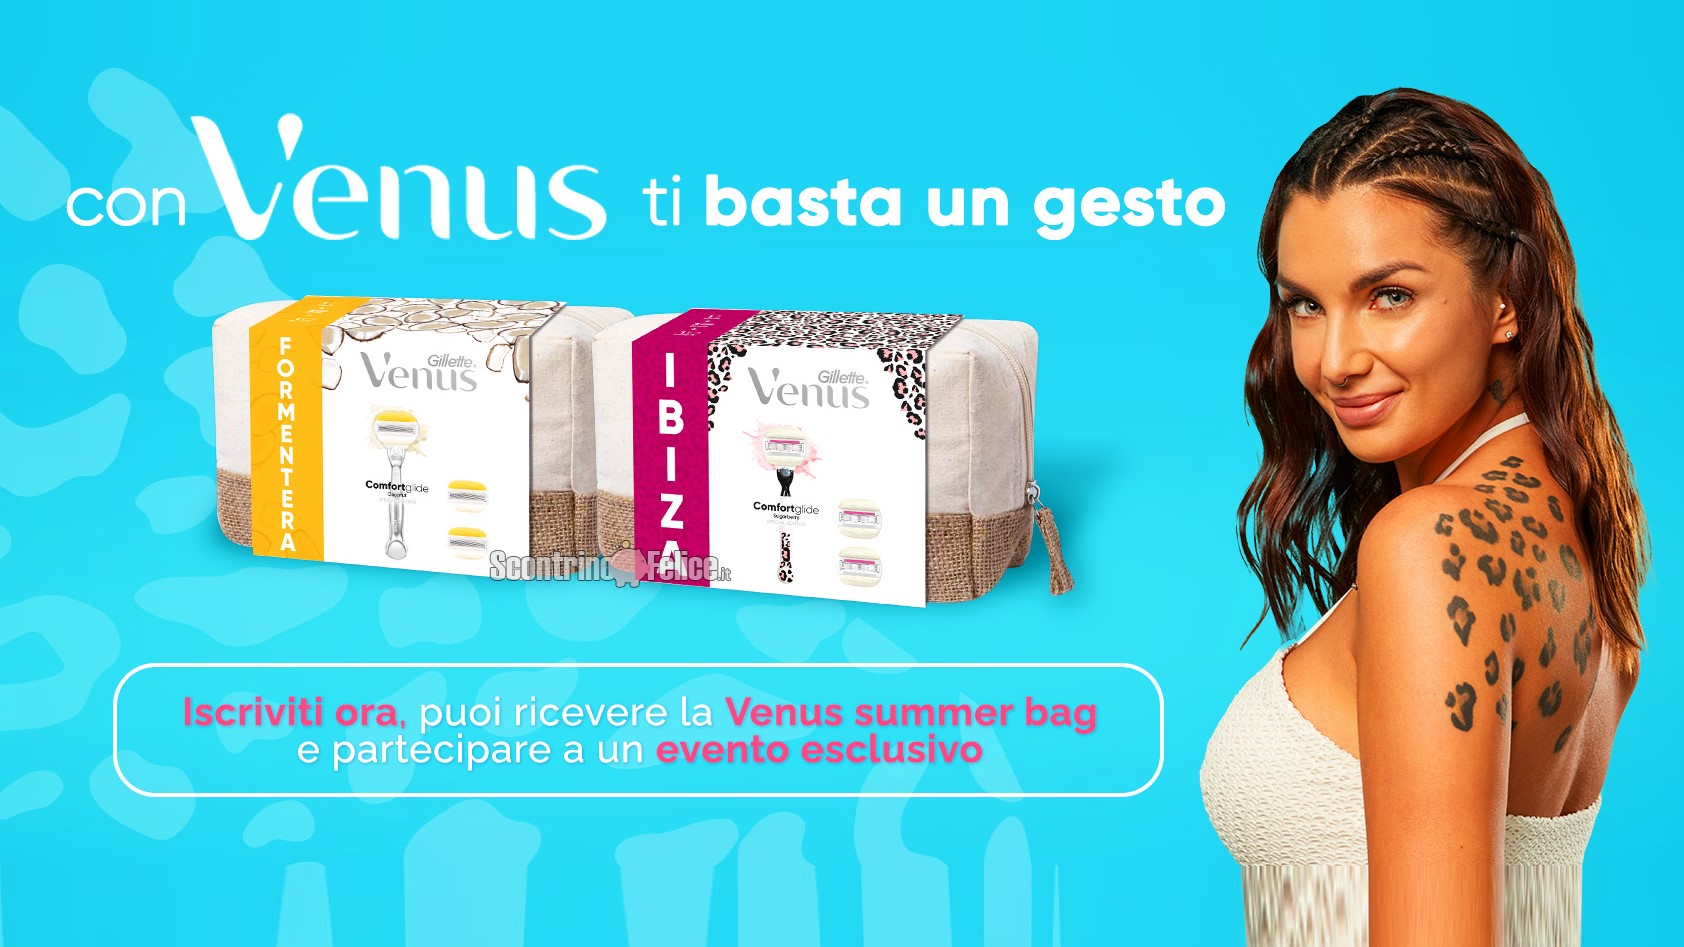 Concorso gratuito Gillette Venus “Con Venus basta un gesto”: vinci 150 summer bag (e test esclusivo)